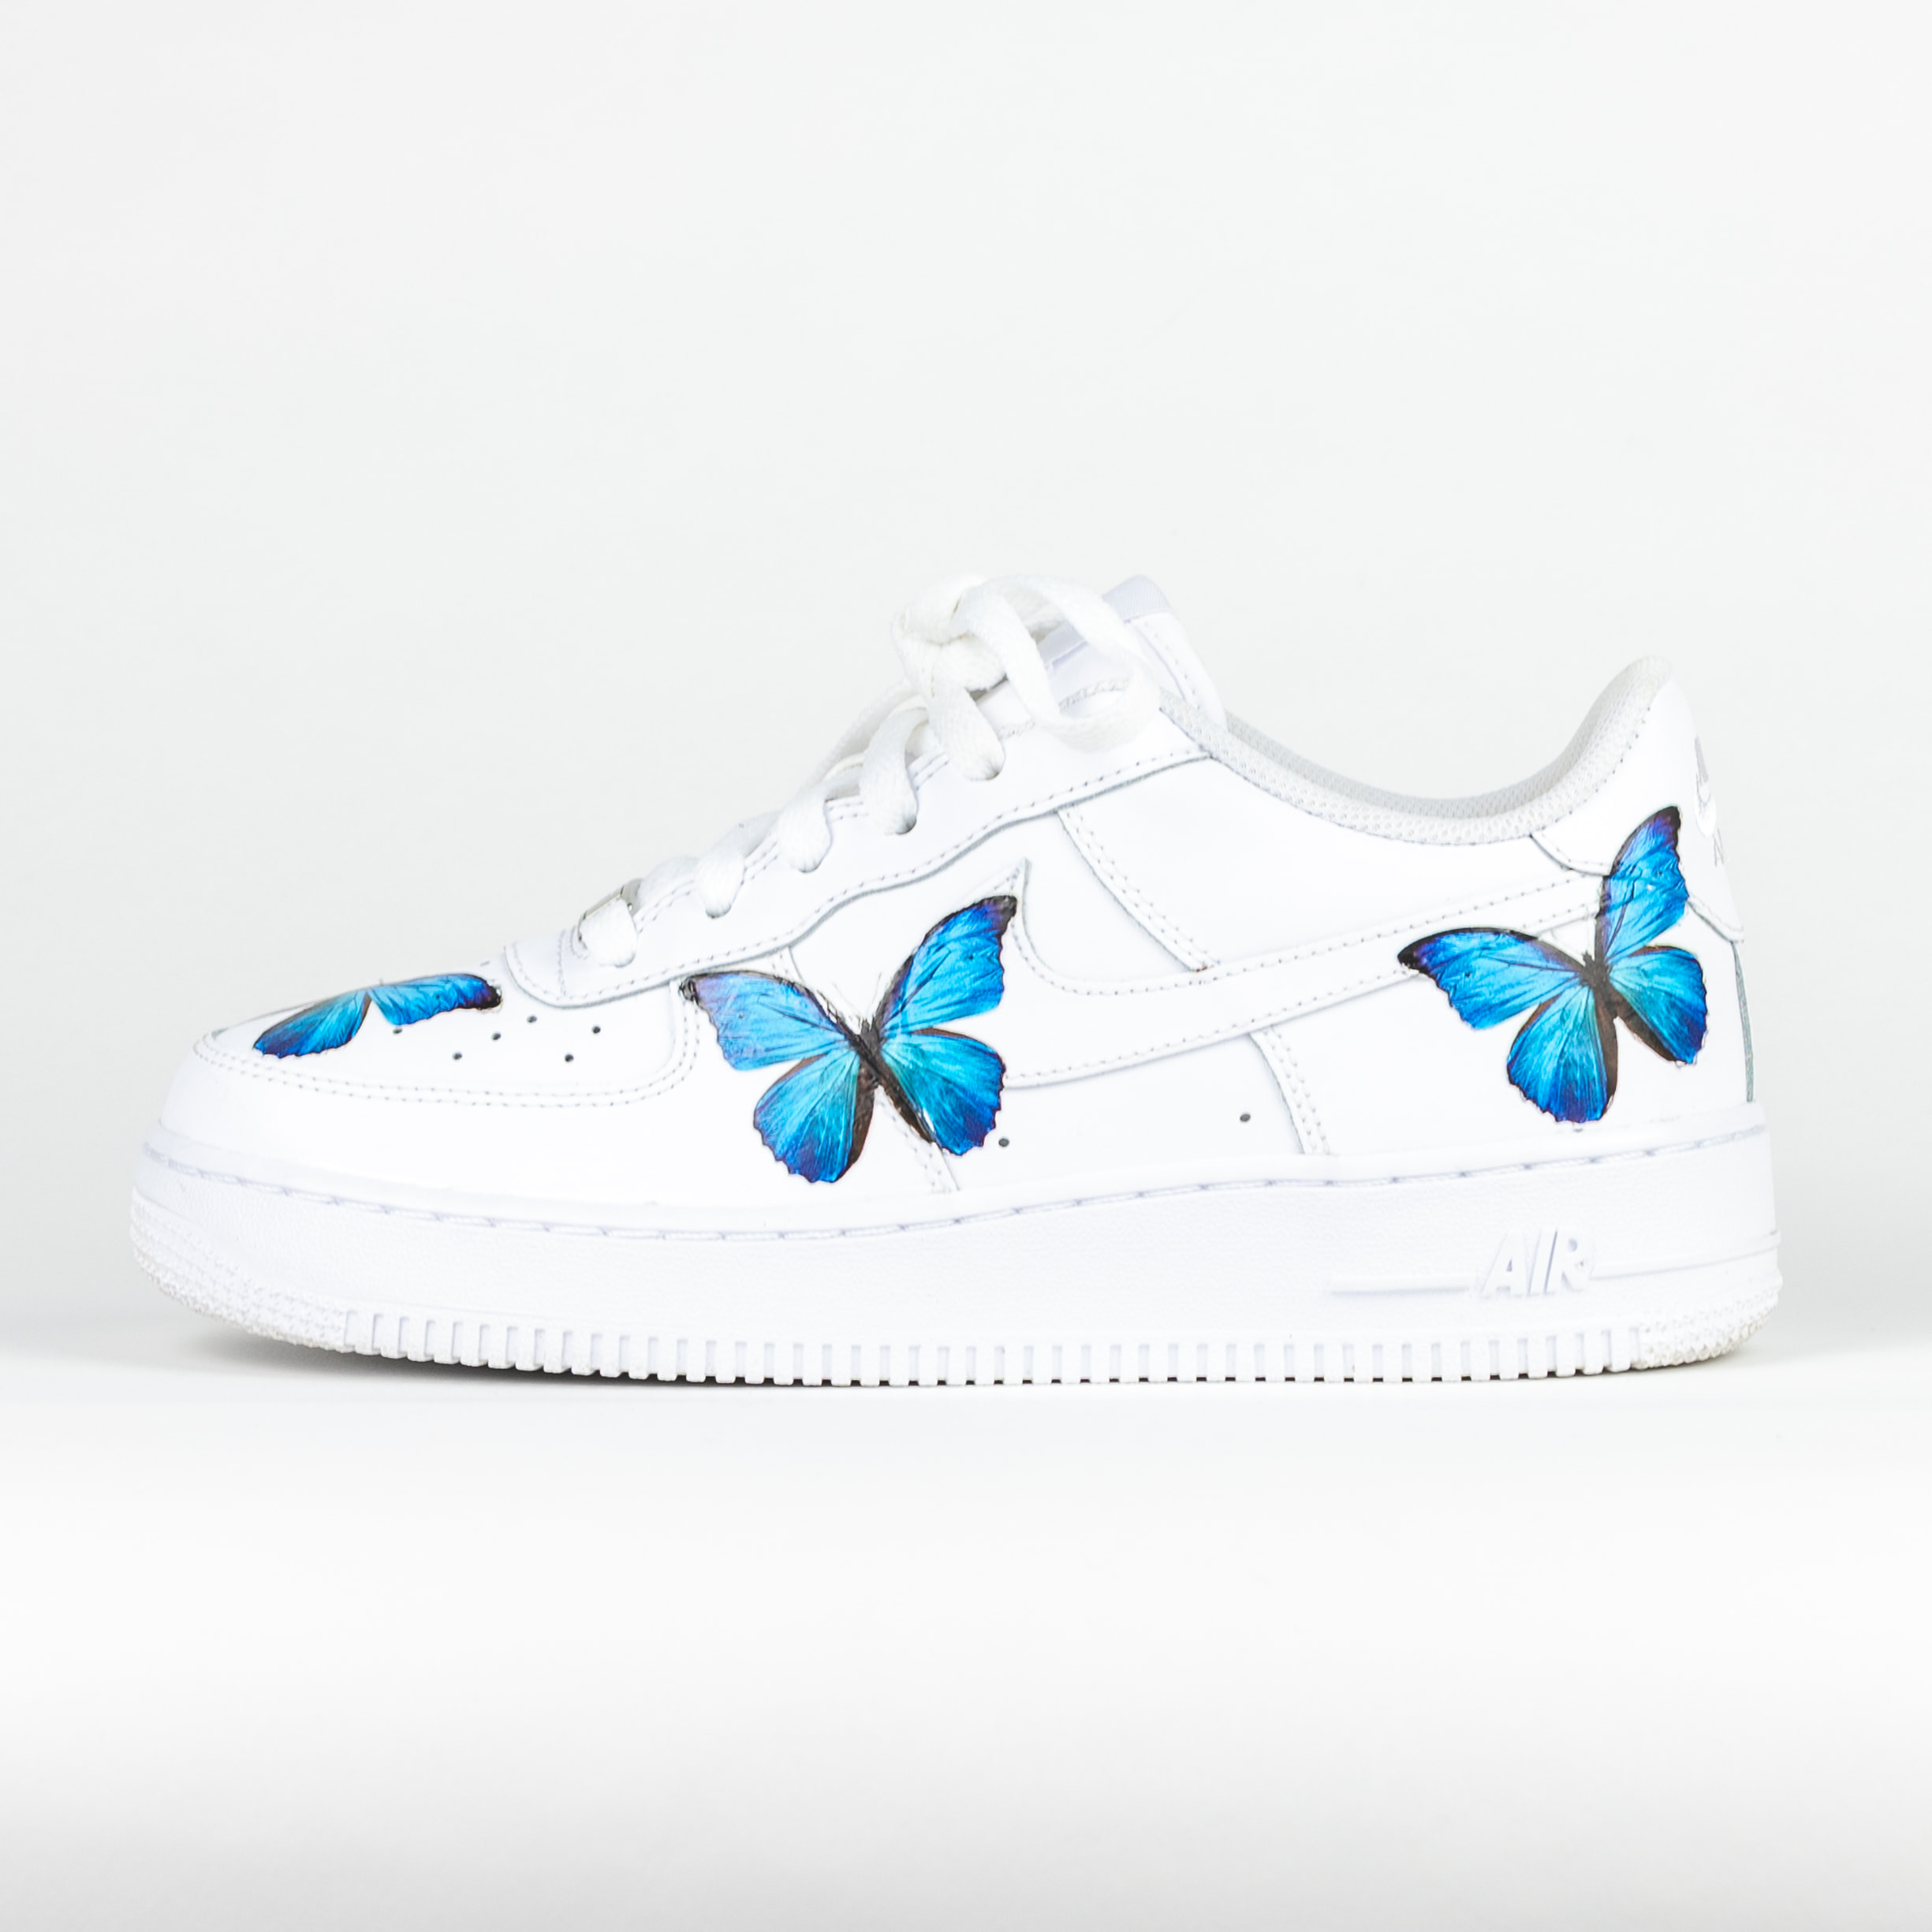 Sudan Vegetation Damp Nike Air Force 1 White Custom 'Blue Butterfly' Edition